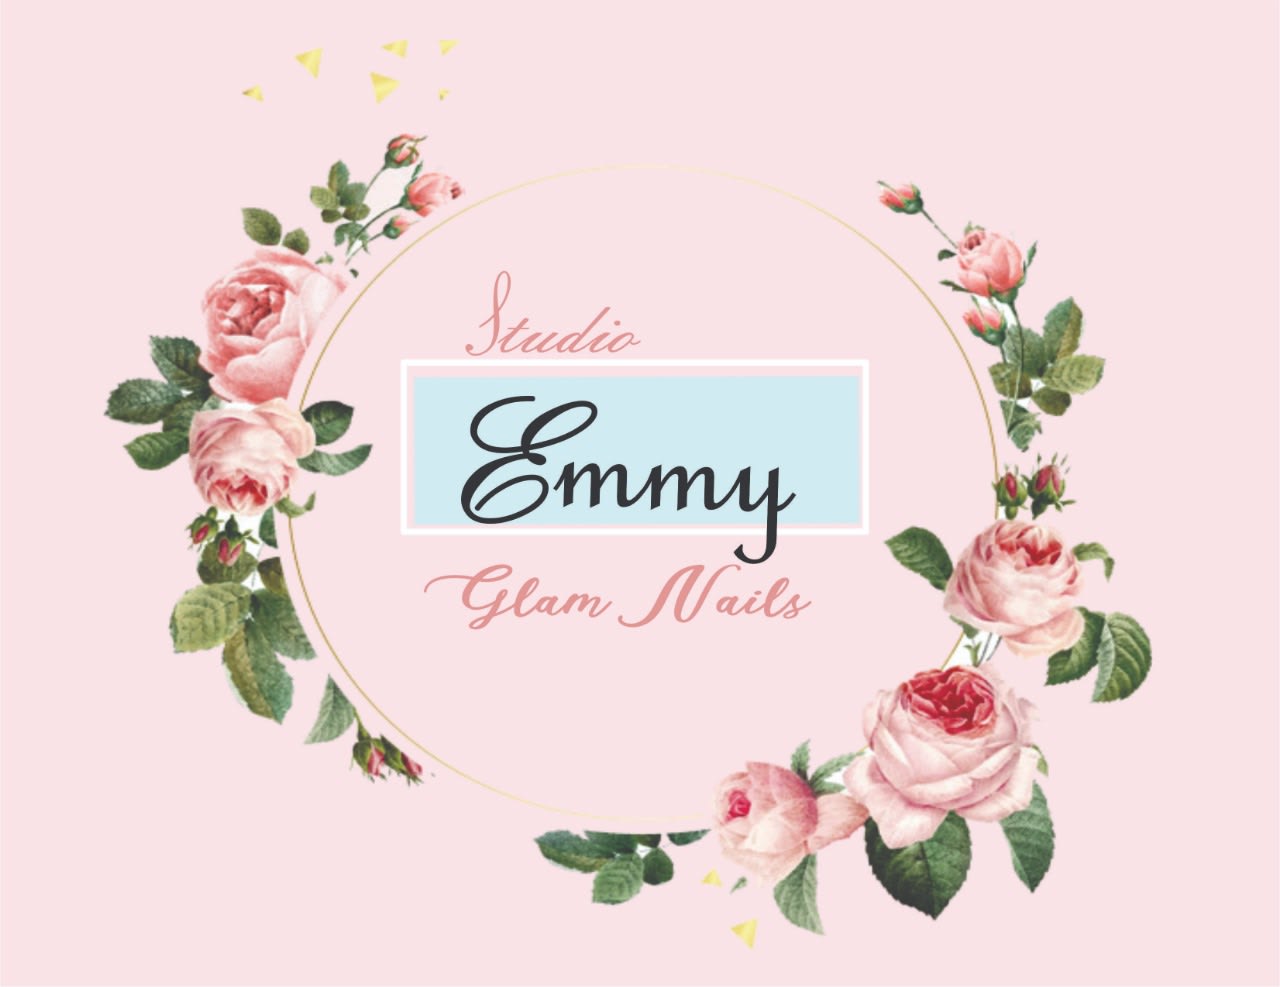 Emmy Glam Nails